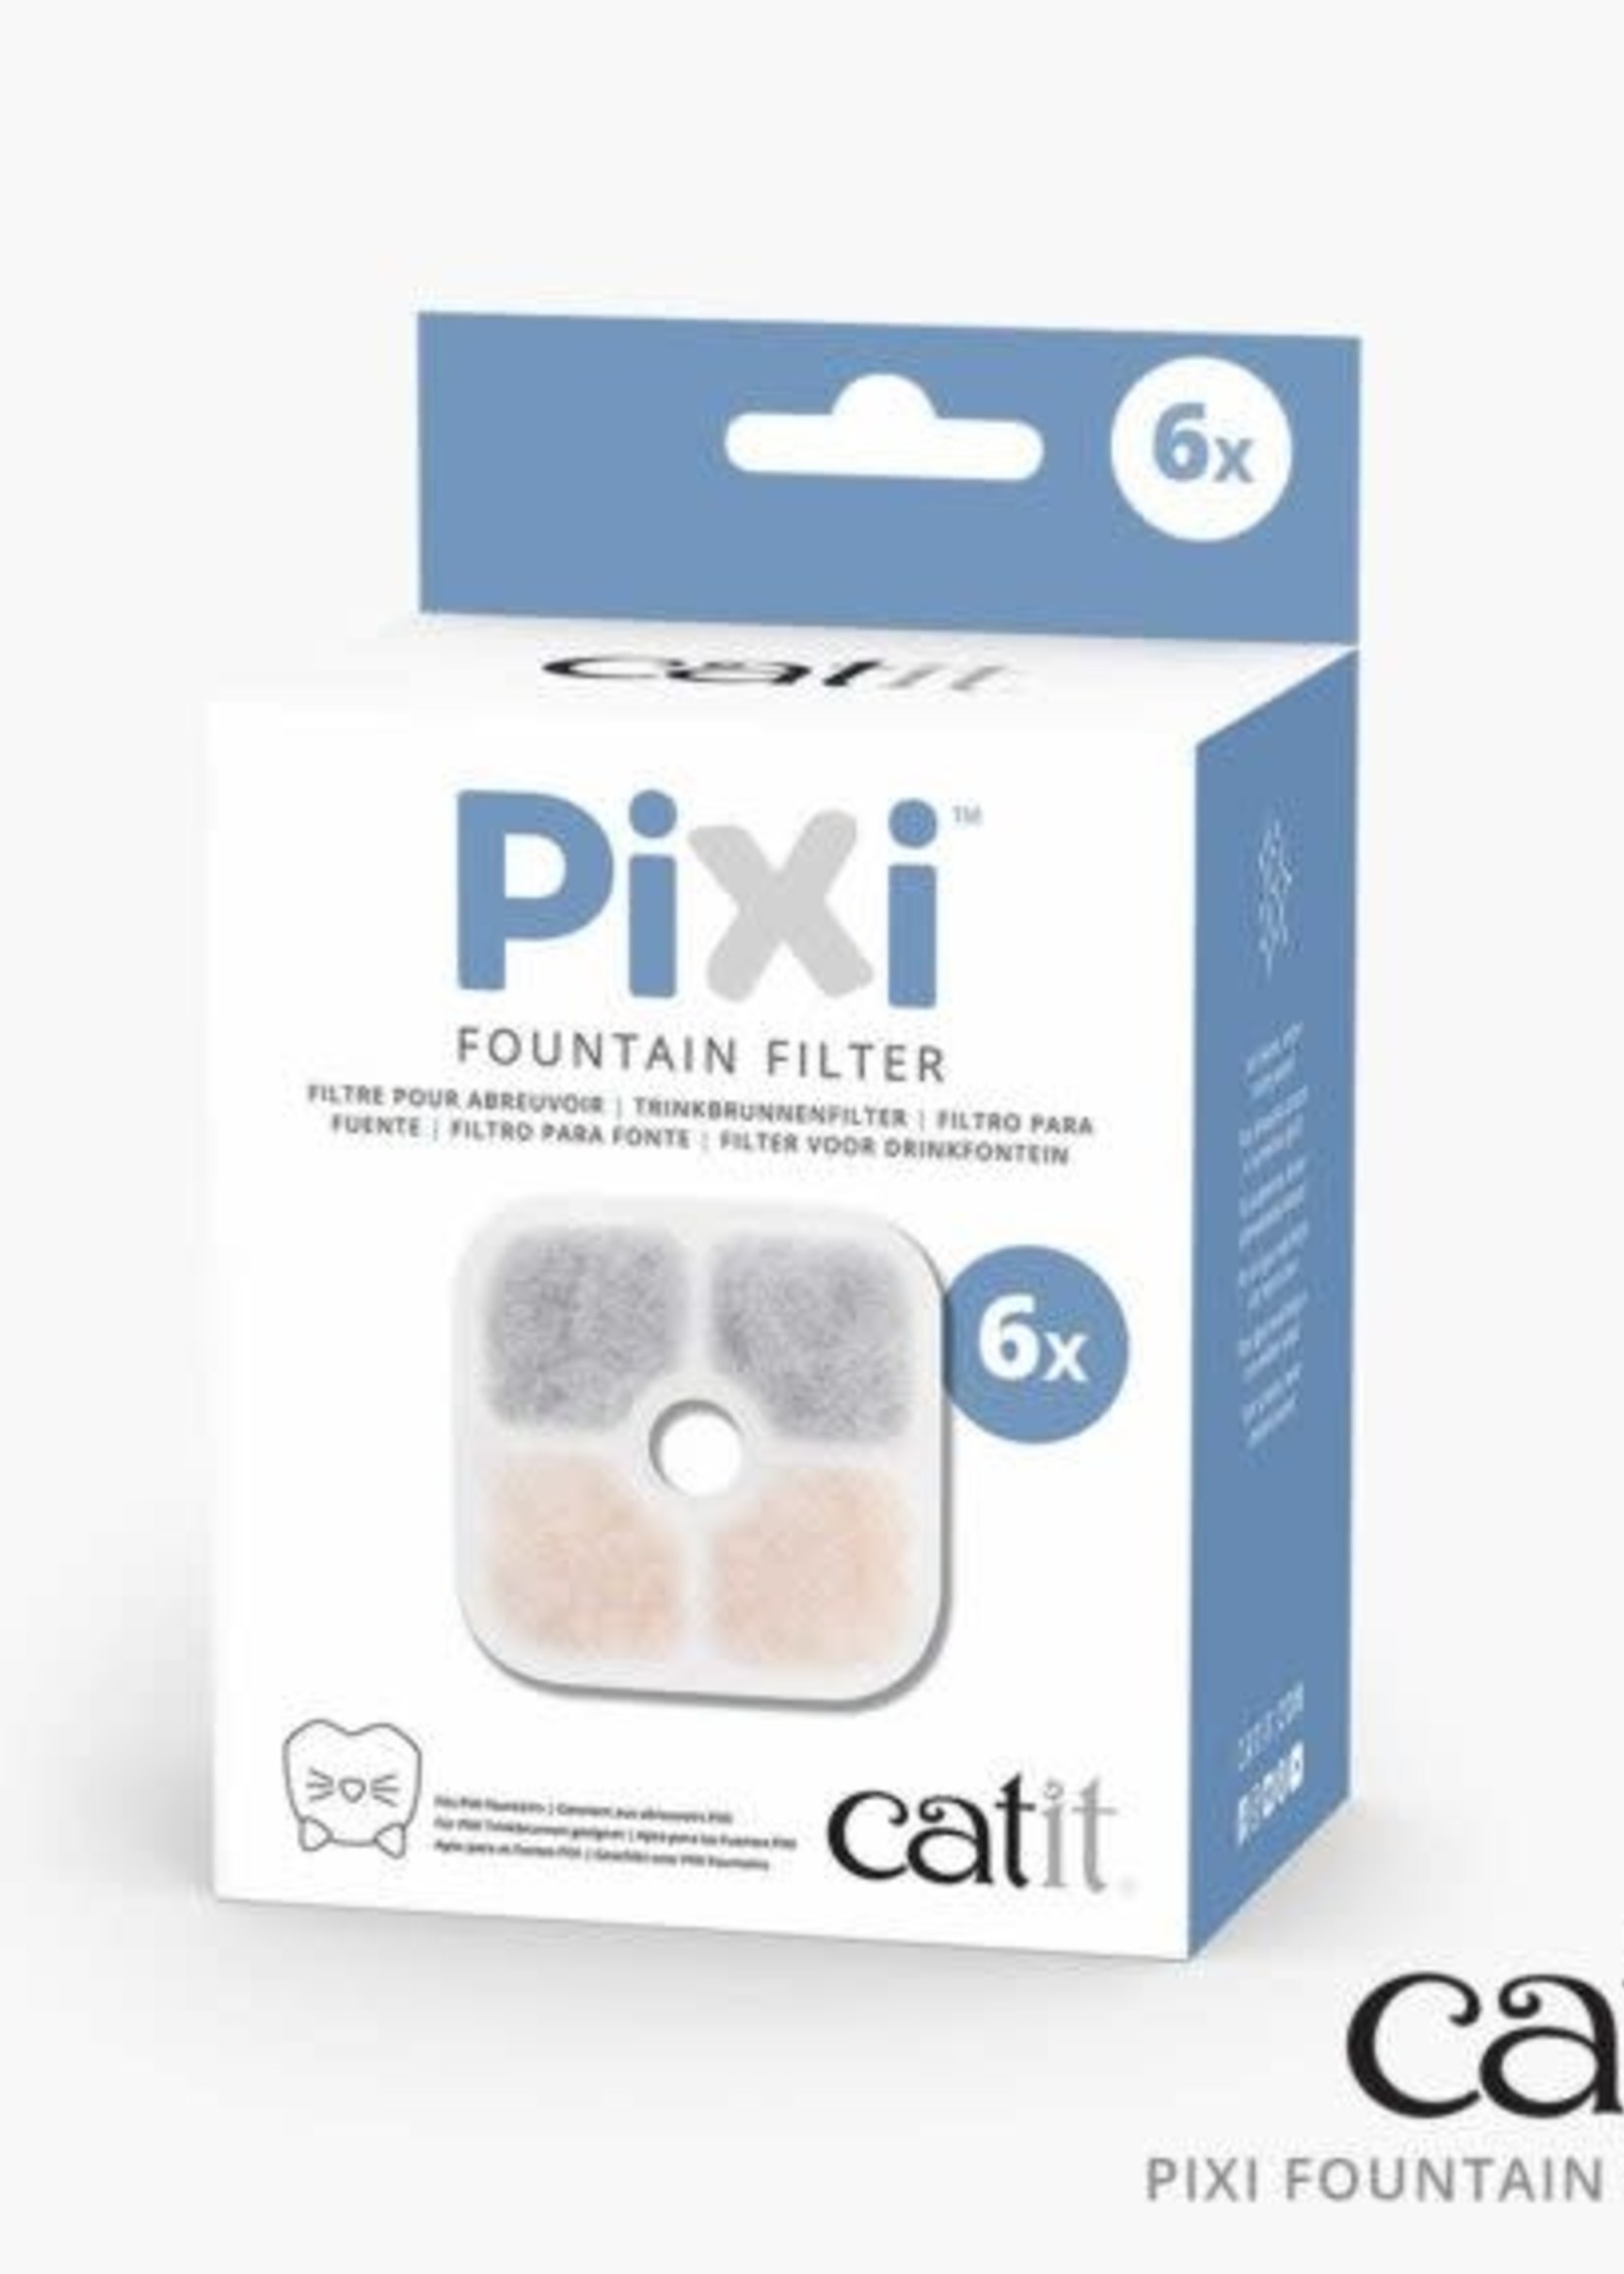 CatIt Catit Pixi Fountain Cartridge, 6-pack